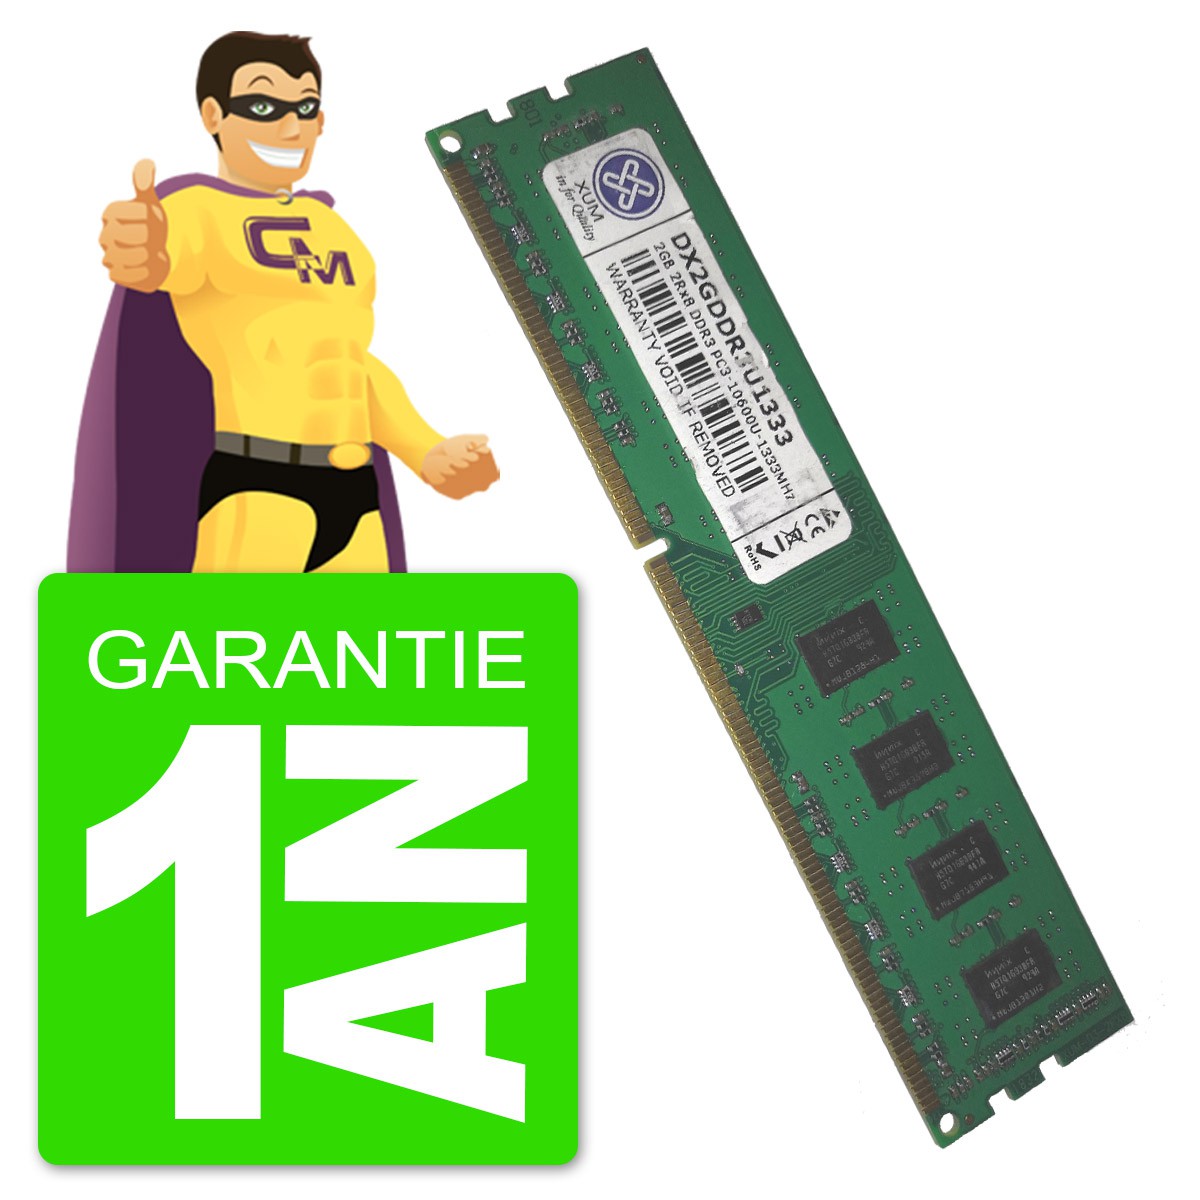 Barrette Mémoire 2Go RAM DDR3 Corsair VS2GB1333D3 DIMM PC3-10600U 1333MHz  1Rx8